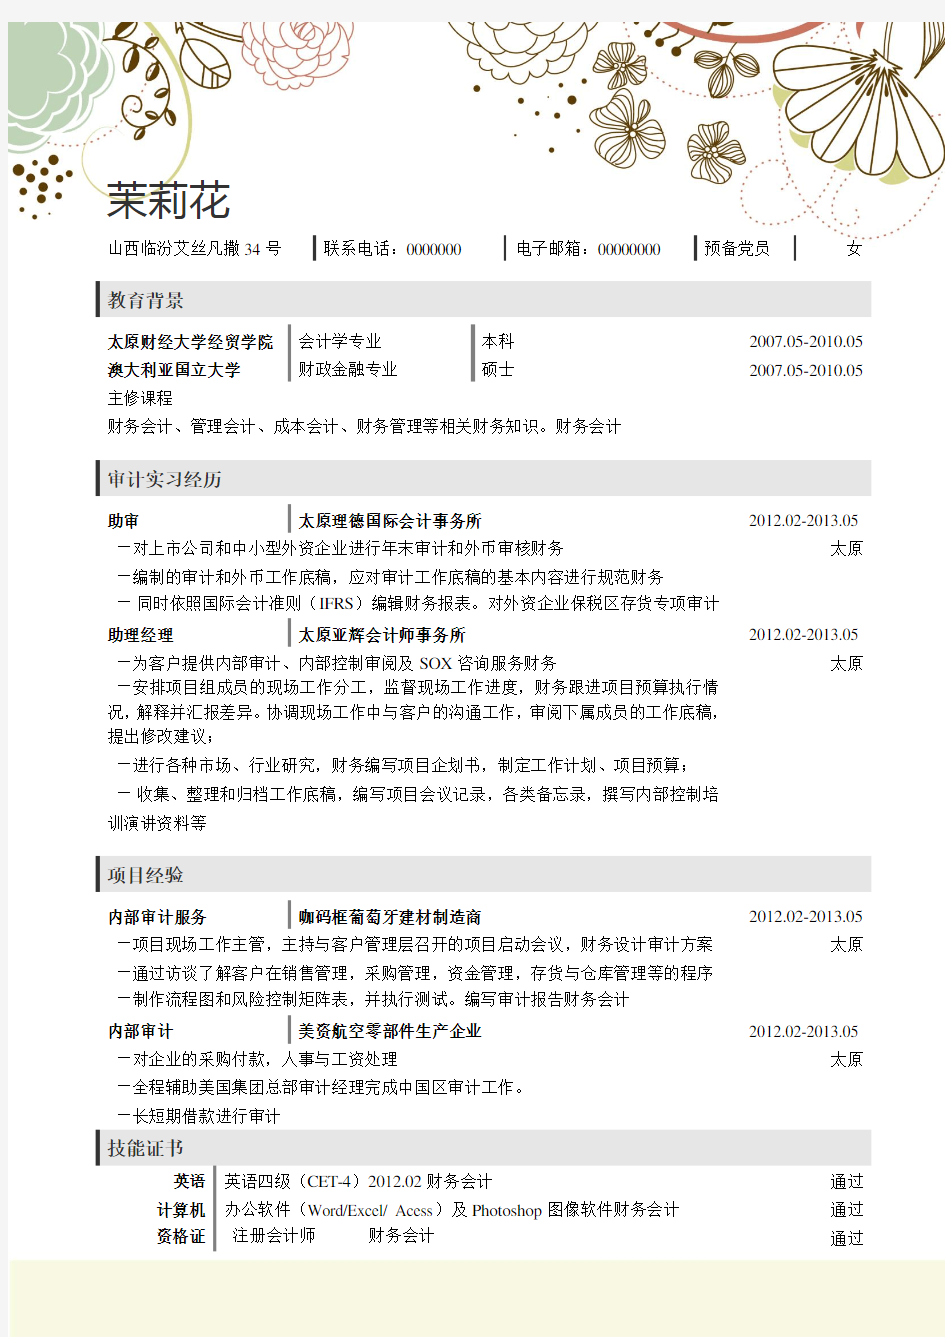 2014最新经典个人简历模板大全下载封面及内页—word版可编辑(五九)